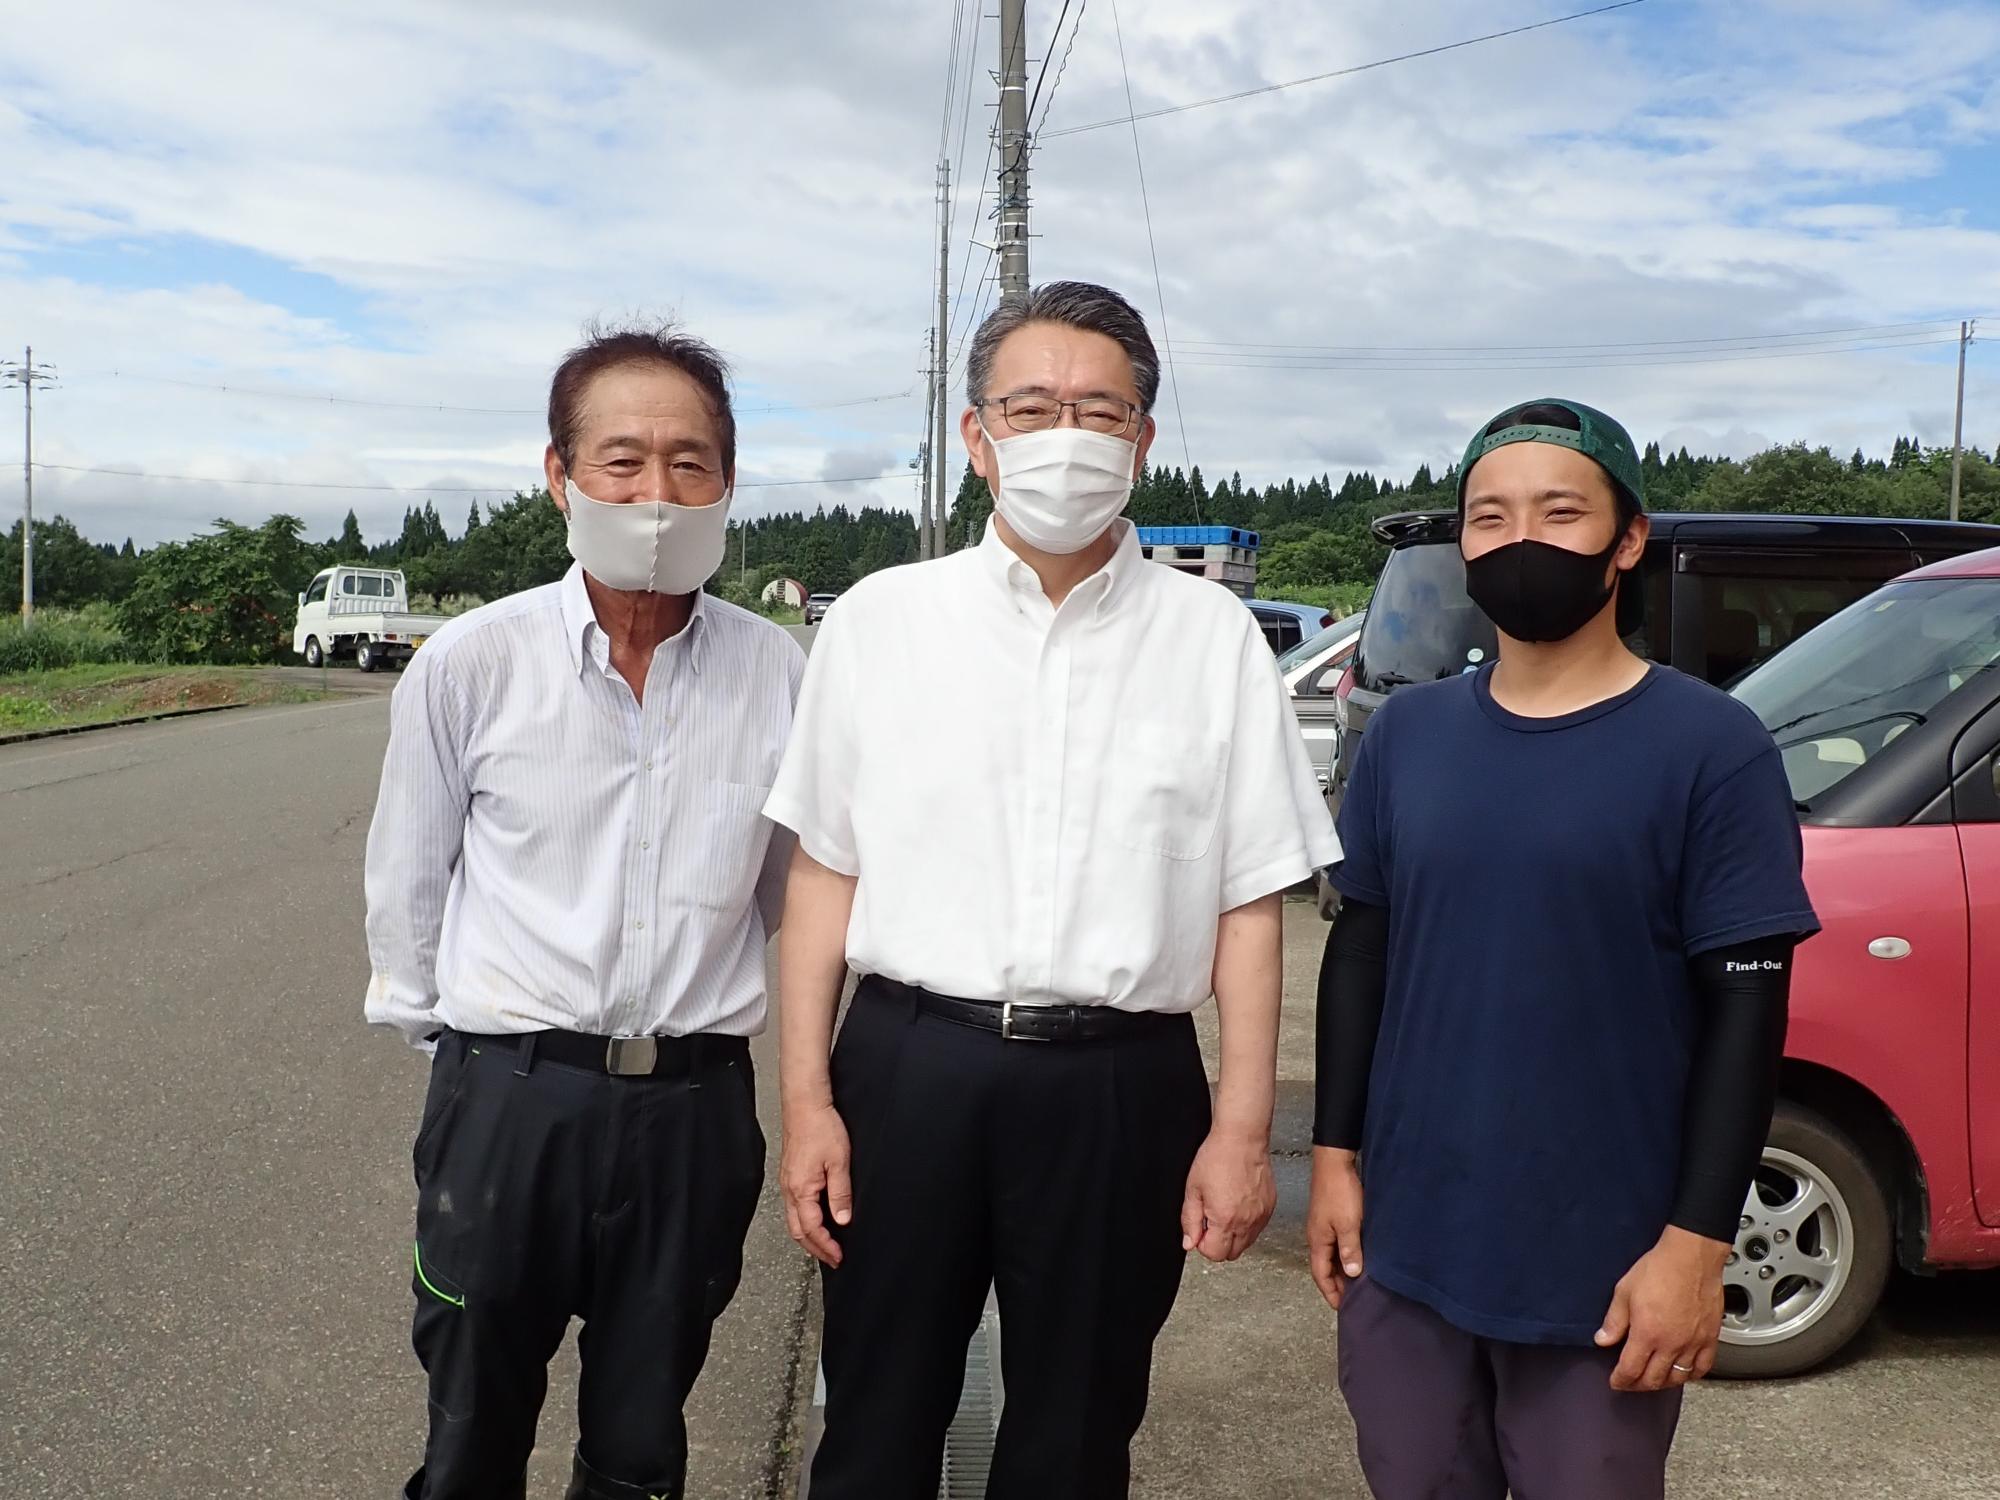 服部副代表、田中工場場と一緒に写った写真